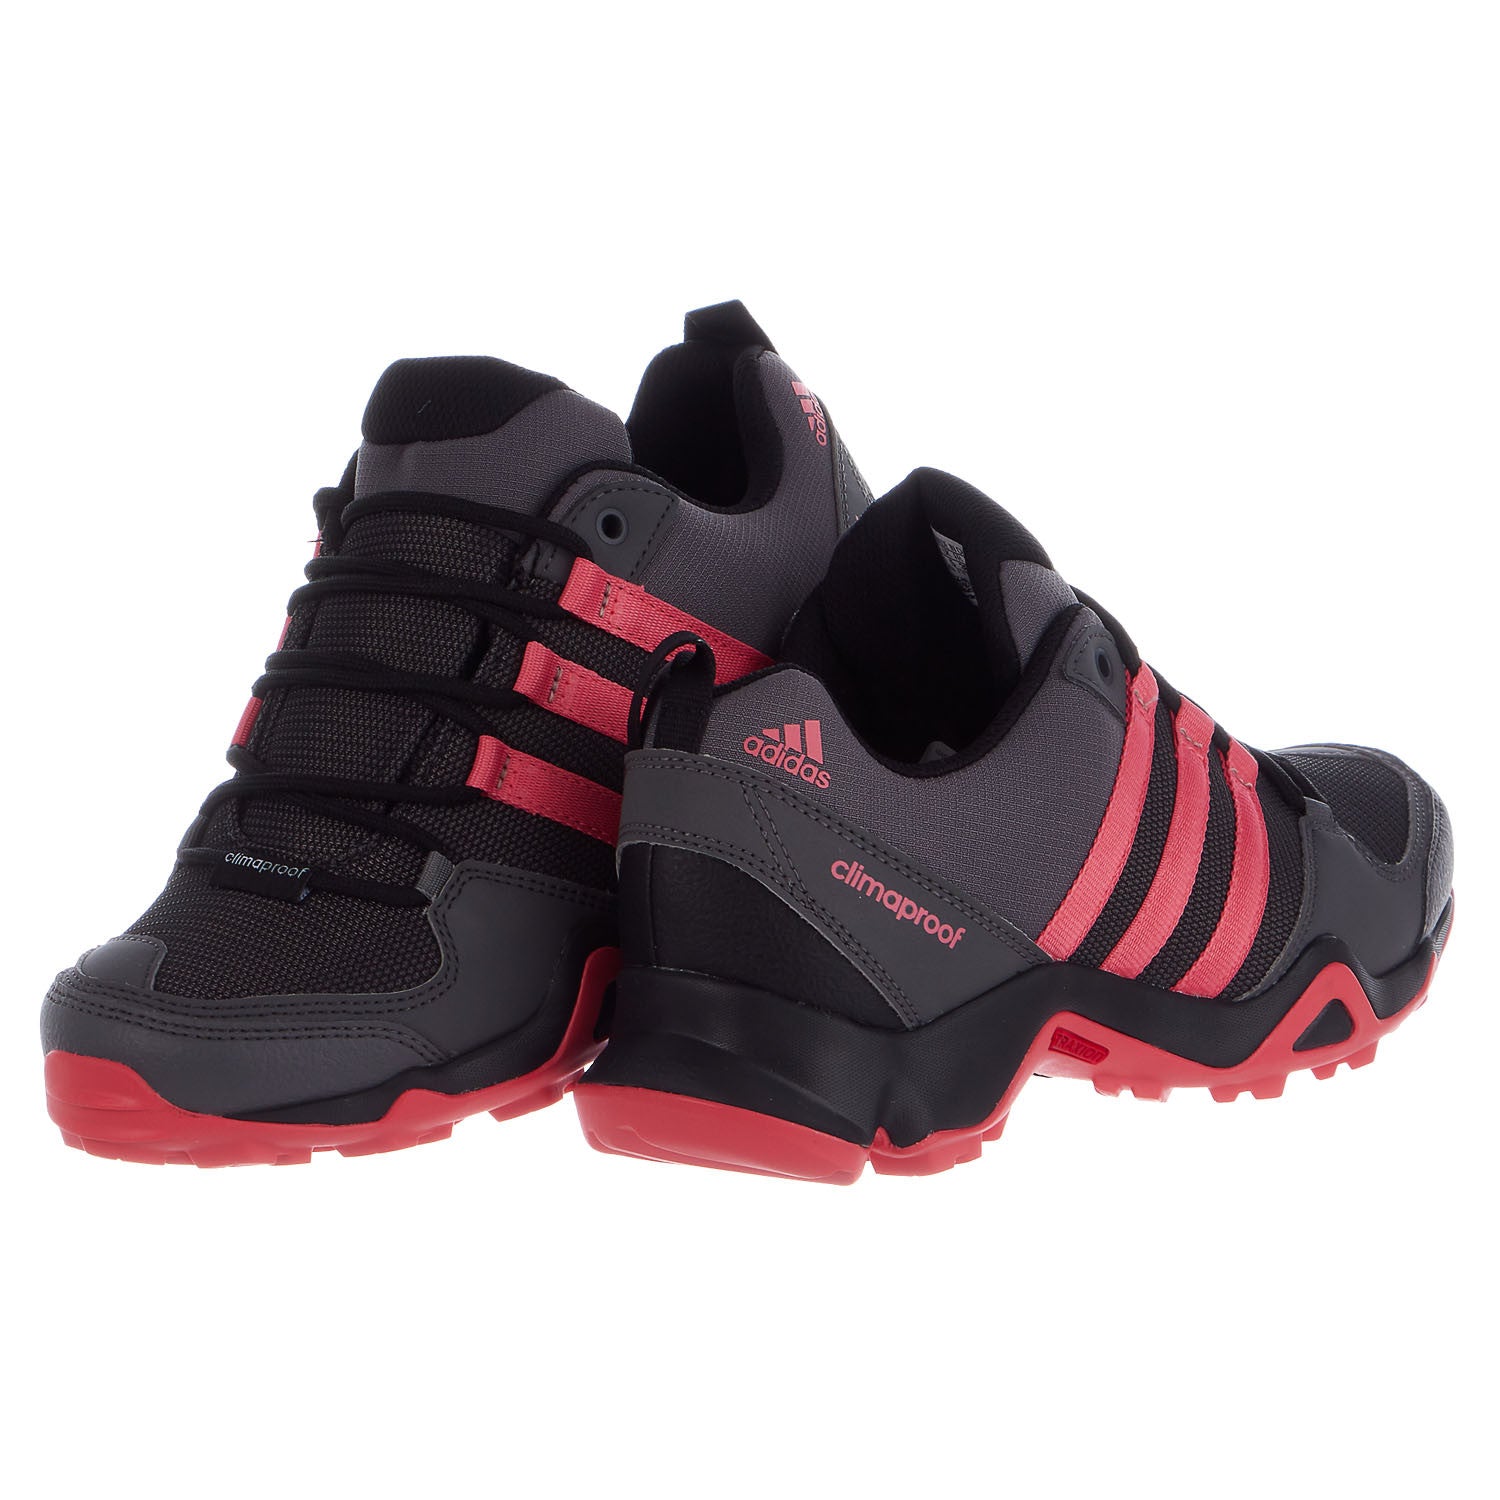 Adidas Outdoor AX 2 Hiking Shoe - Women's -